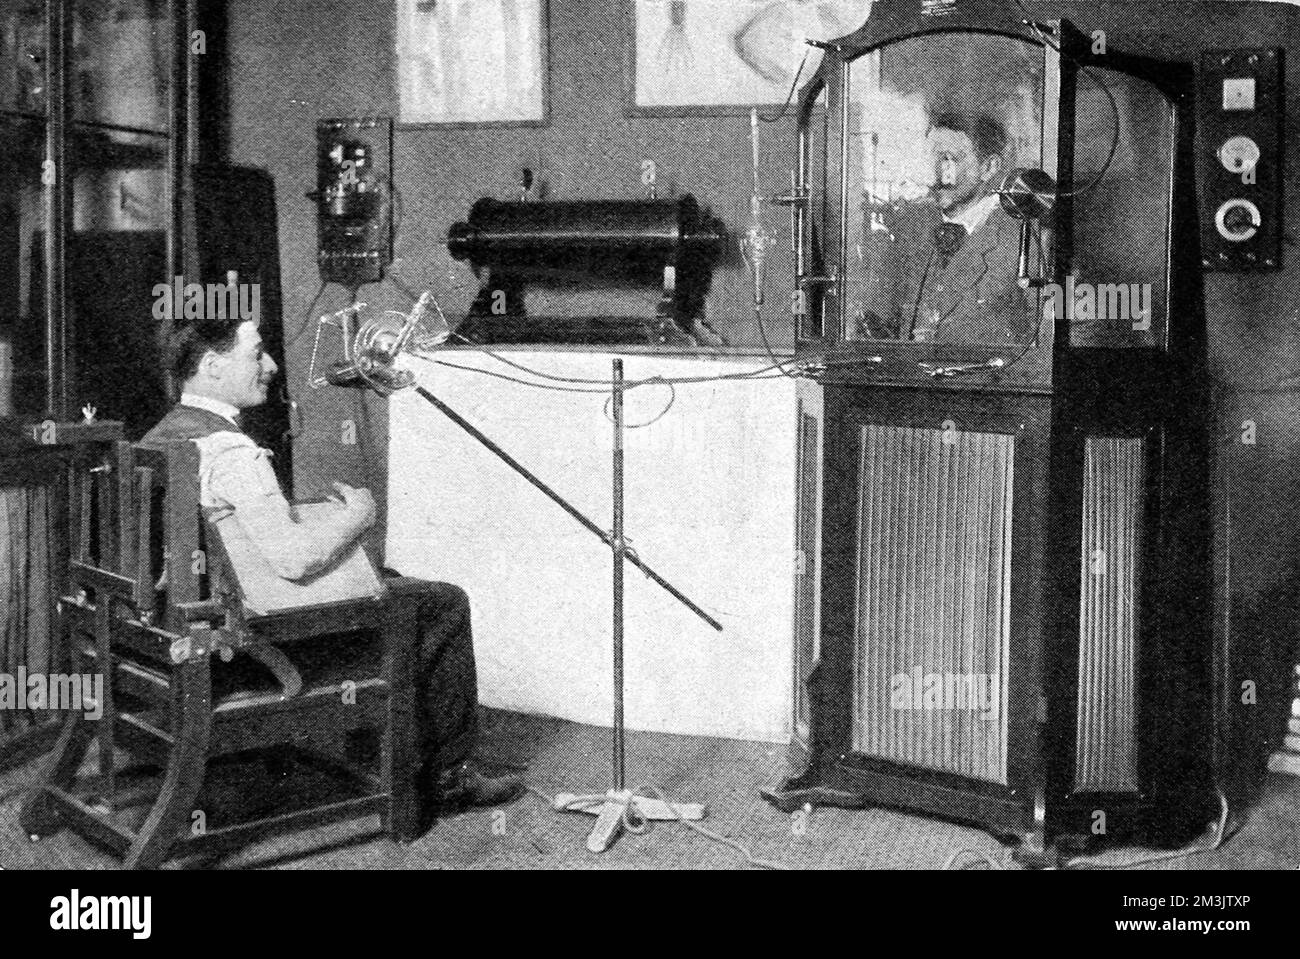 Una fotografia di una radiografia in corso in cui il medico è protetto da un armadietto con rivestimento in piombo. Un'invenzione di mm. Radiguet e Massiot, ha permesso ai medici di controllare i raggi X senza esposizione a radiazioni eccessive. Data: 1910 Foto Stock